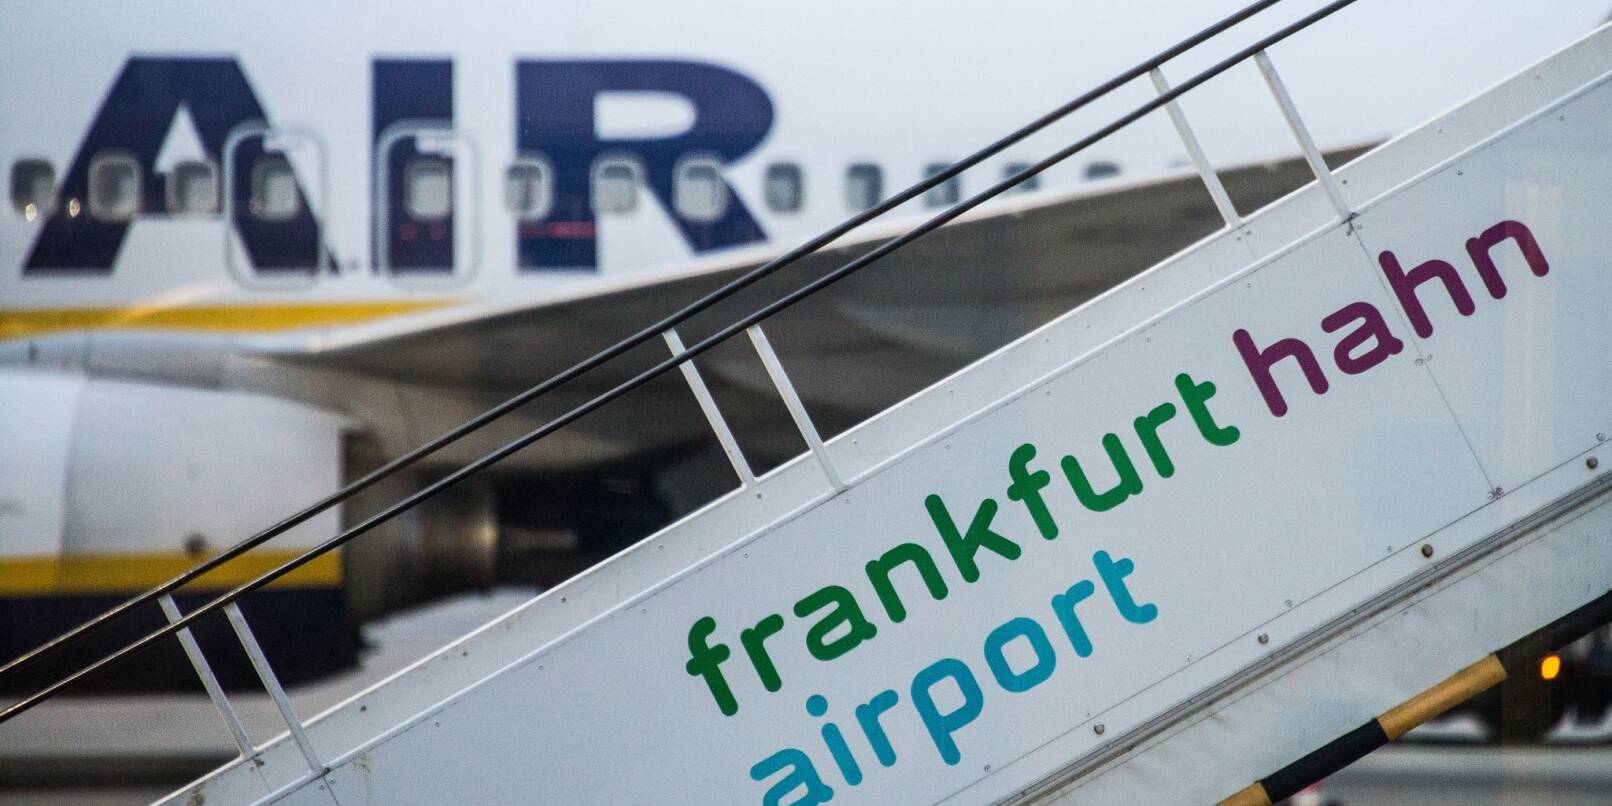 Der Hunsrück-Flughafen Hahn hat mit der Trierer Triwo AG einen neuen Besitzer.